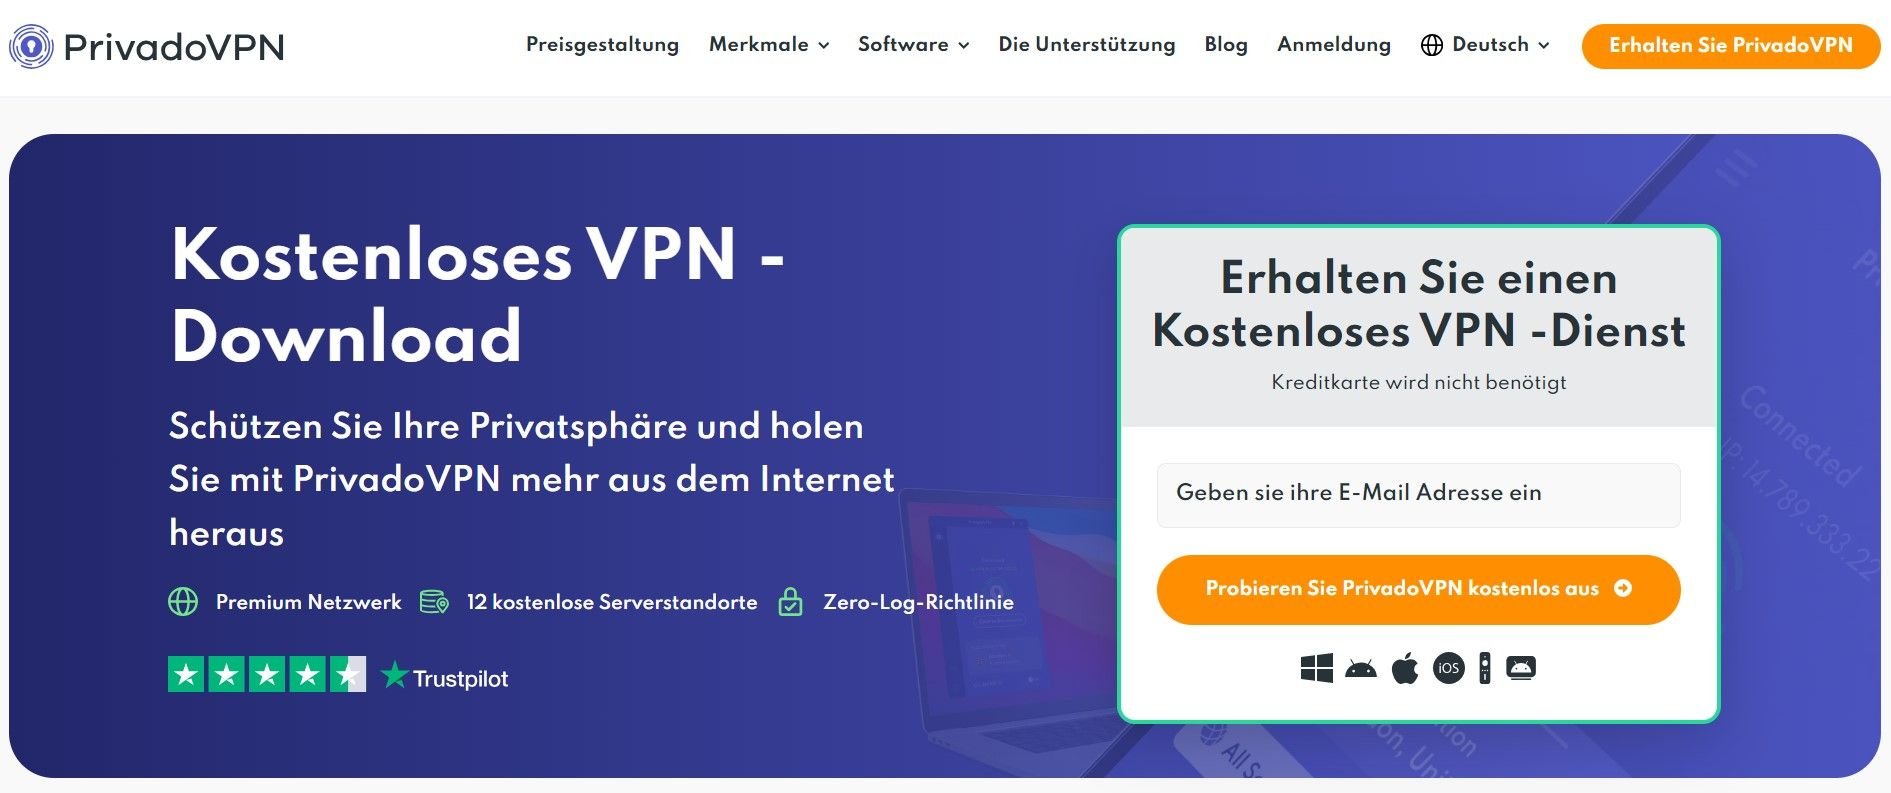 PrivadoVPN bestes kostenloses VPN Österreich gratis